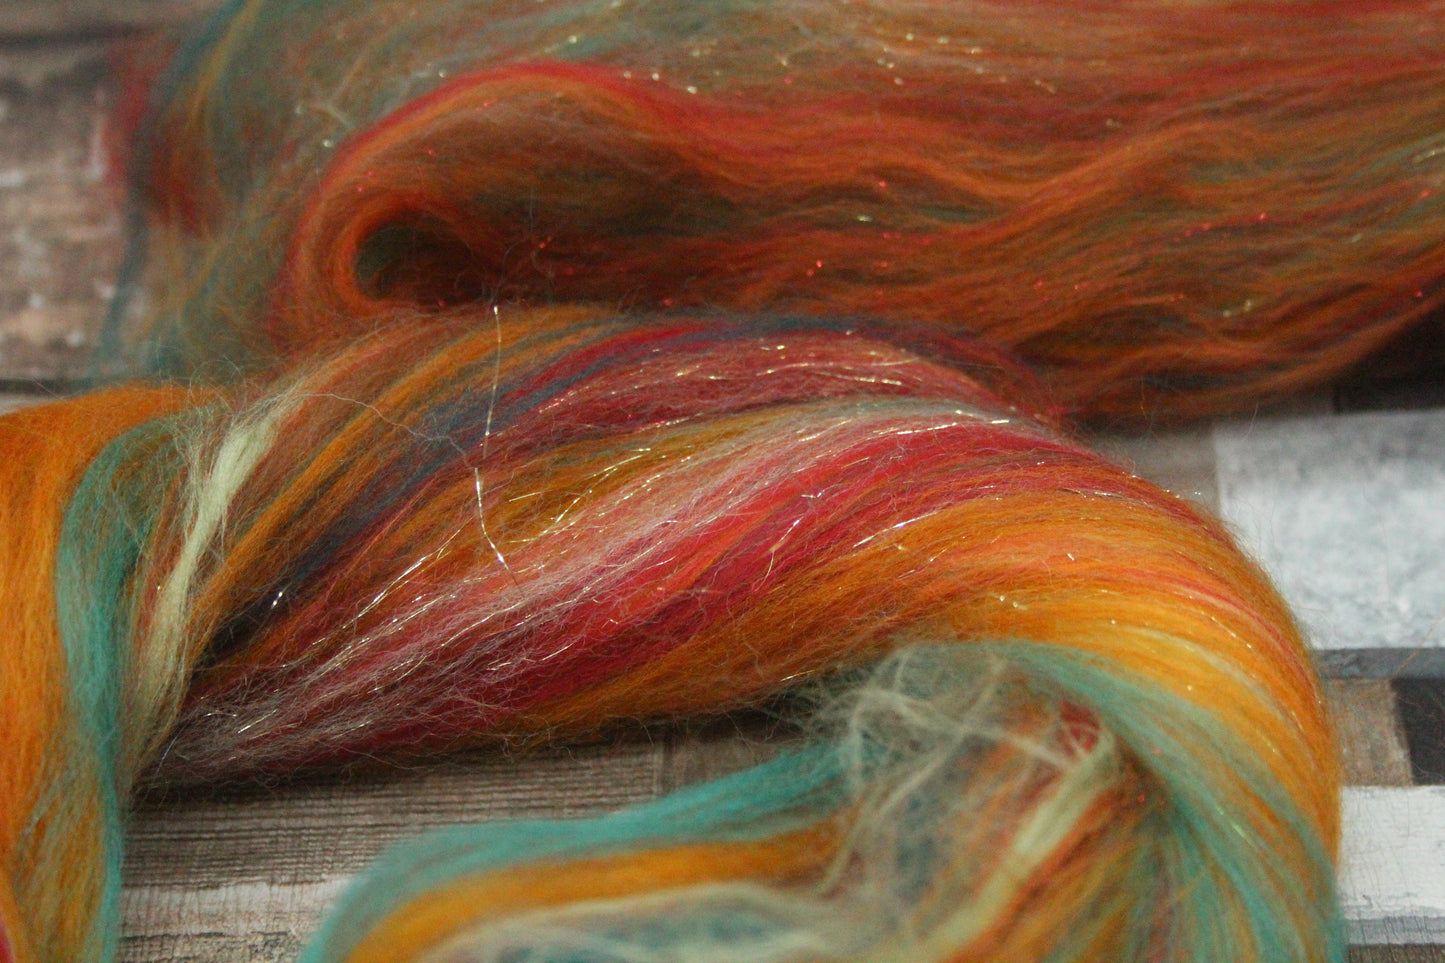 Merino Wool Blend - Orange Brown Green Red - 46 grams / 1.6 oz  - Fibre for felting, weaving or spinning